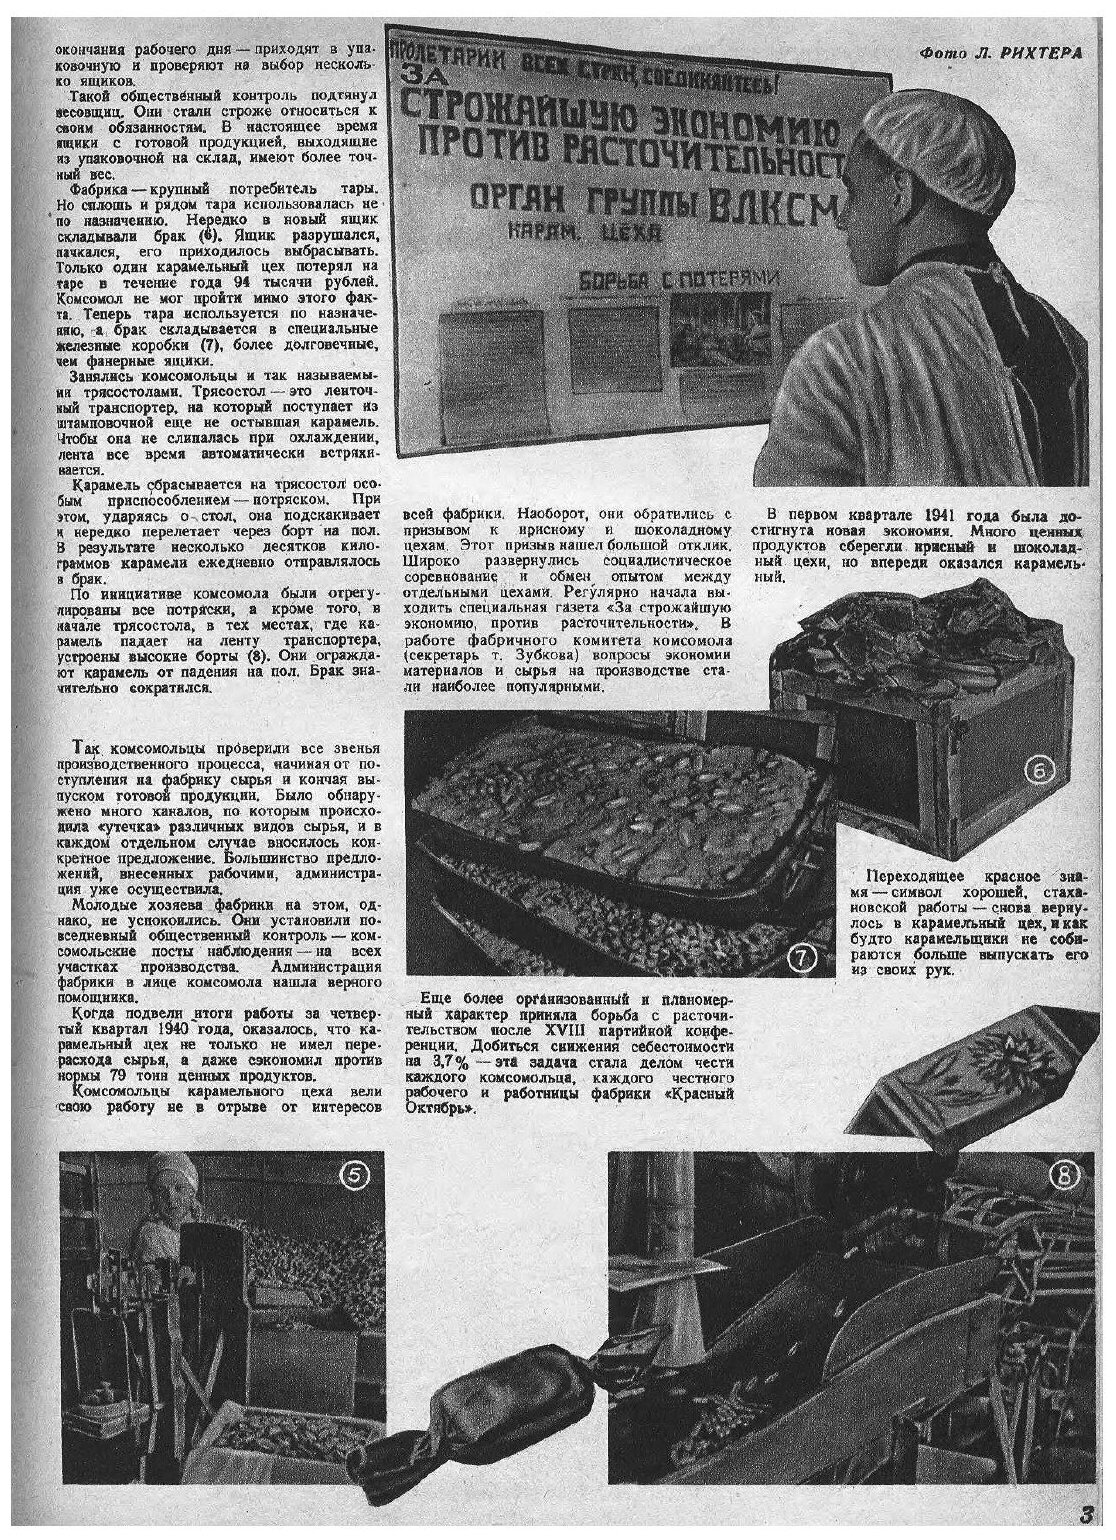 Журнал "Техника молодежи". № 06, 1941 - фото №2